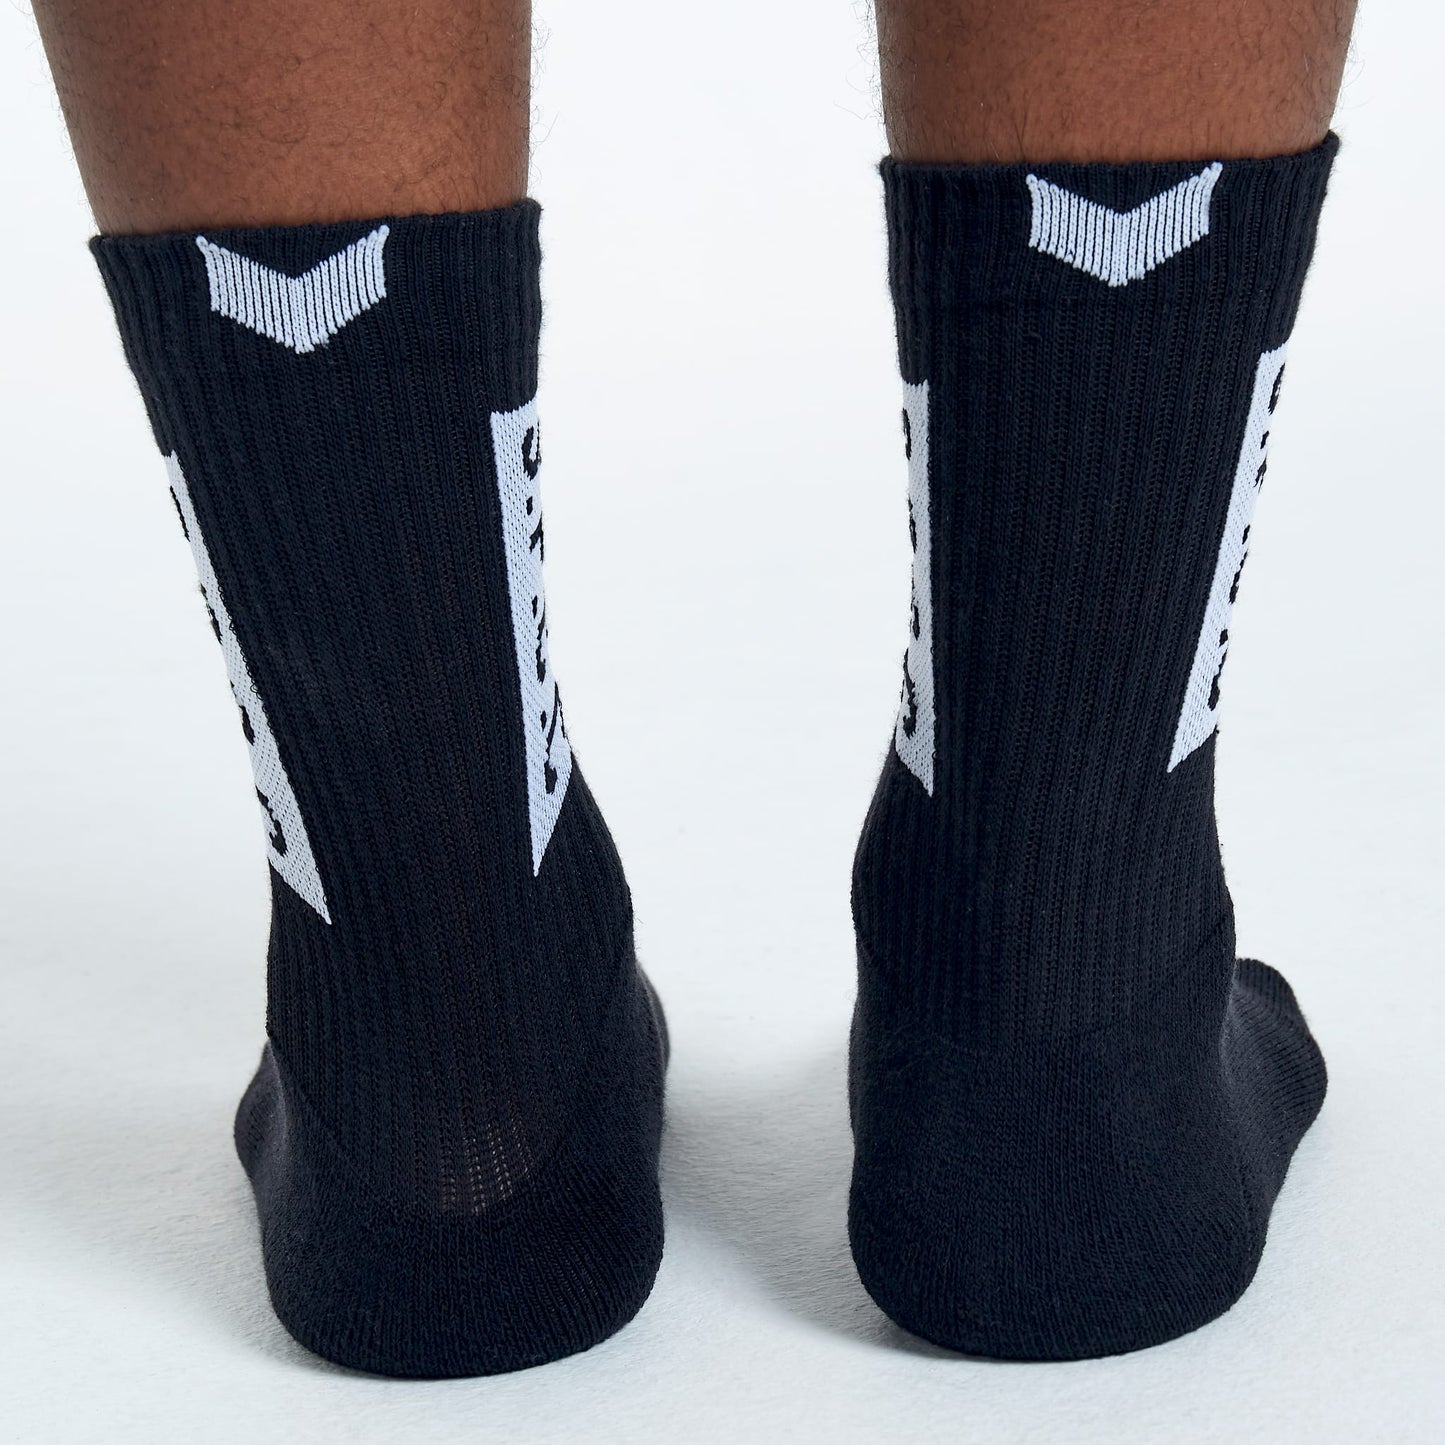 Johnson Socks (3-Pack) - Black